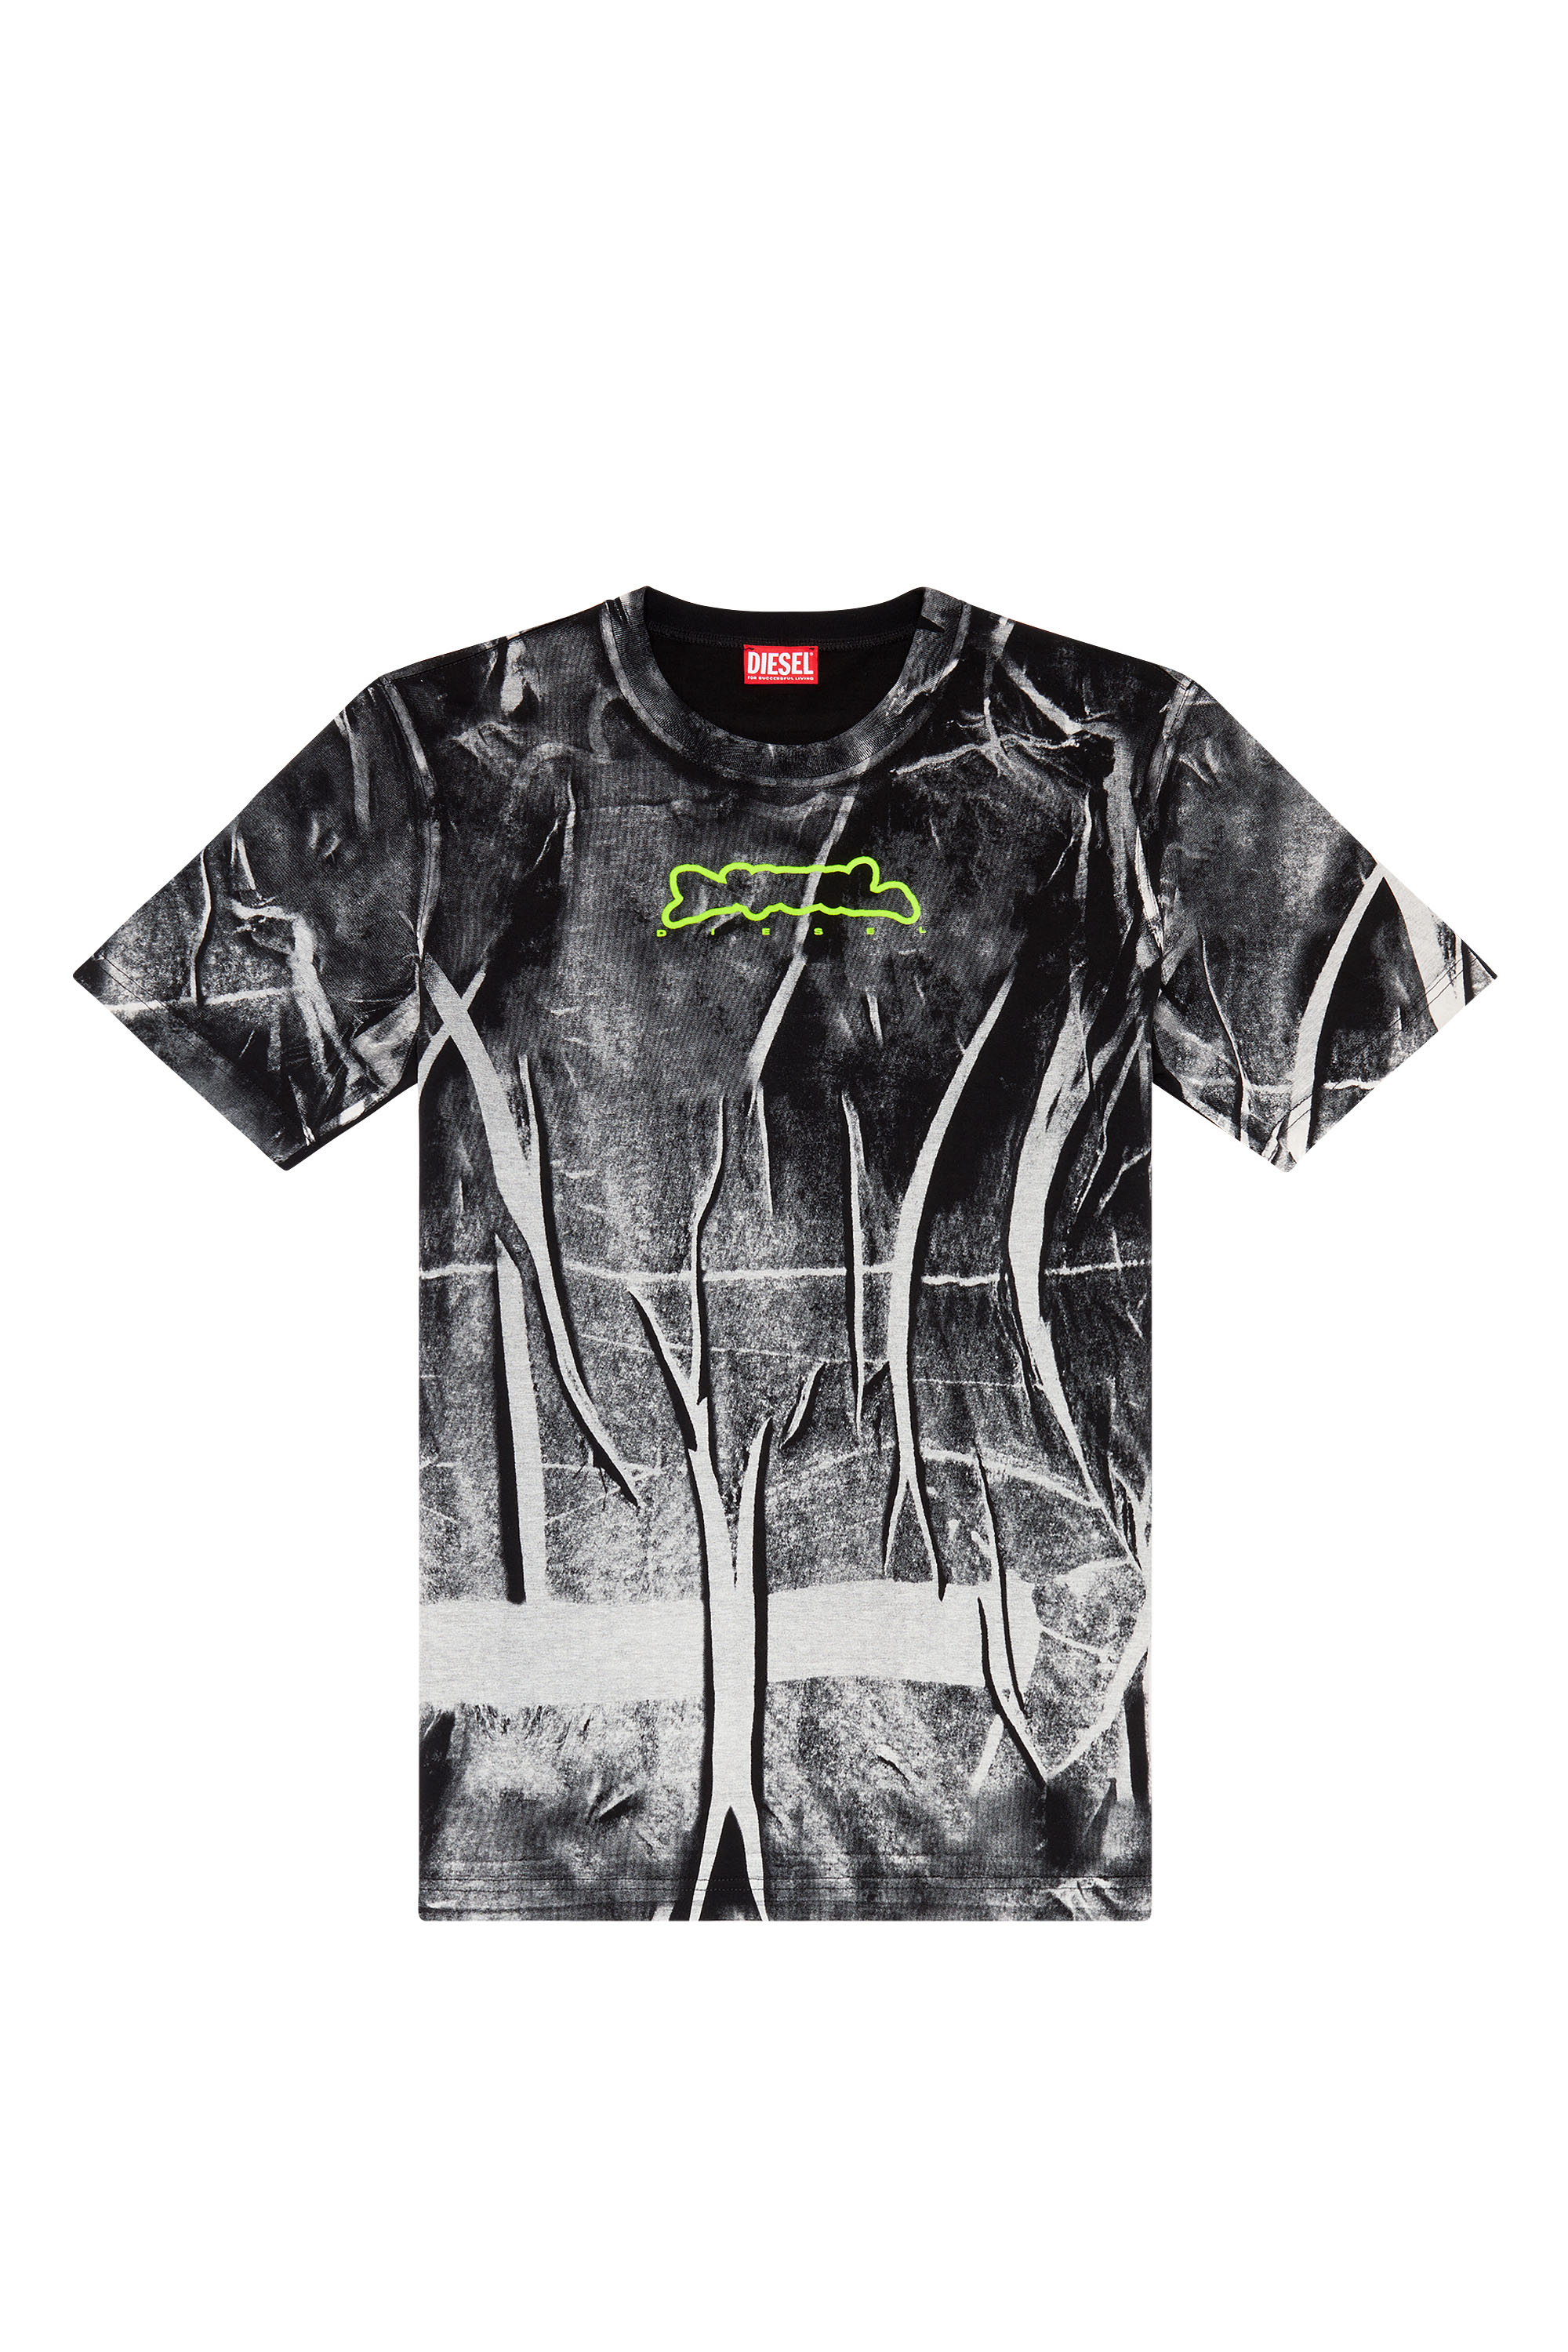 Diesel - T-JUST-N3, Homme T-shirt avec imprimé effet froissé in Polychrome - Image 4